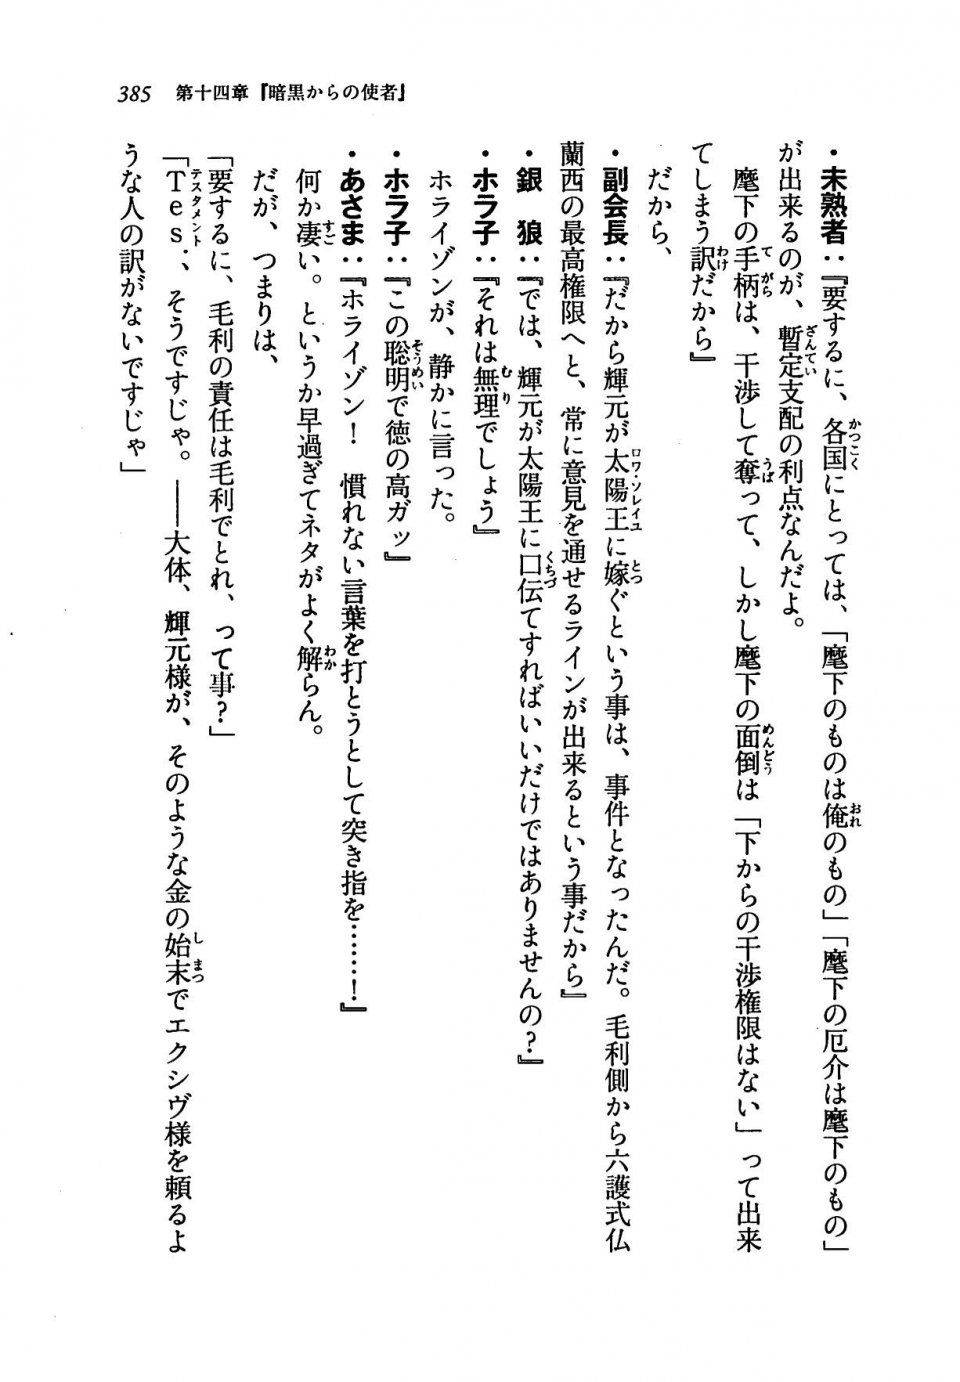 Kyoukai Senjou no Horizon LN Vol 19(8A) - Photo #385